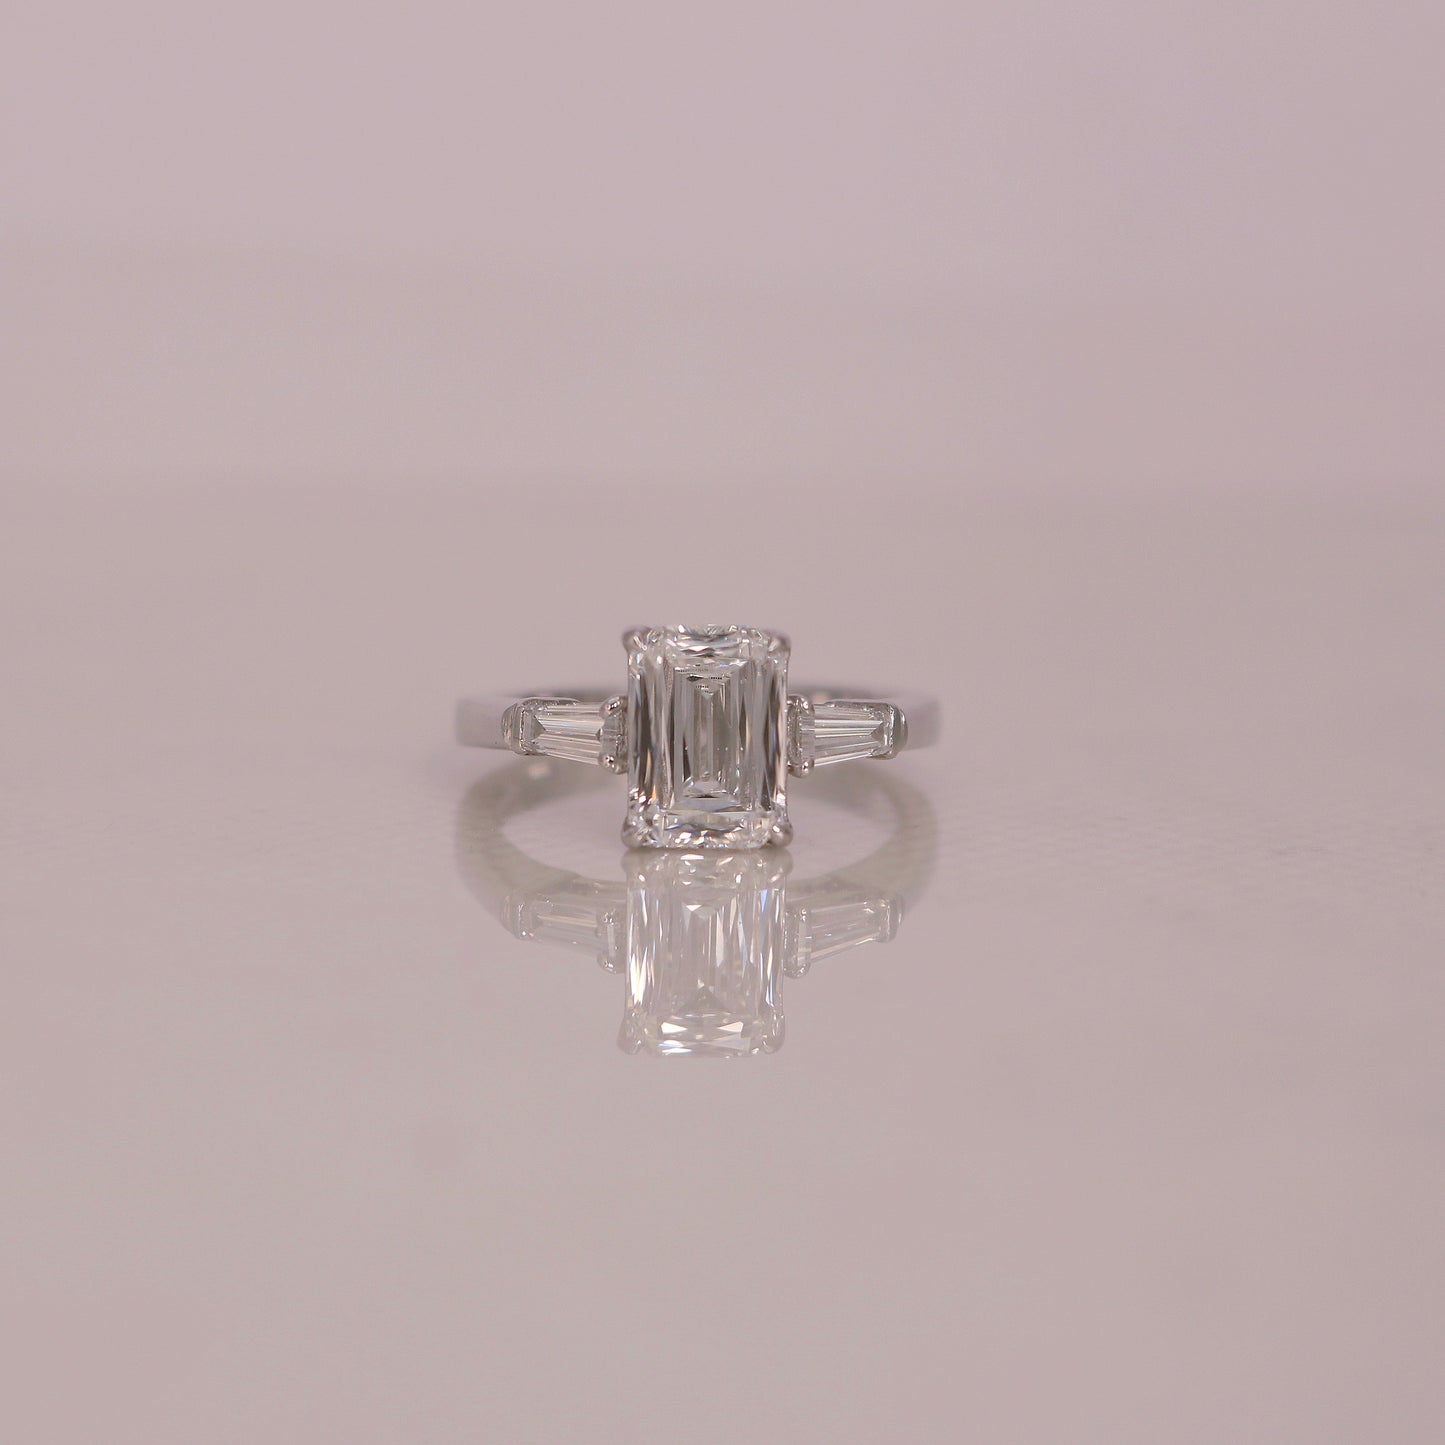 Load image into Gallery viewer, Vortexara Lab Grown Diamond Ring - Fiona Diamonds - Fiona Diamonds
